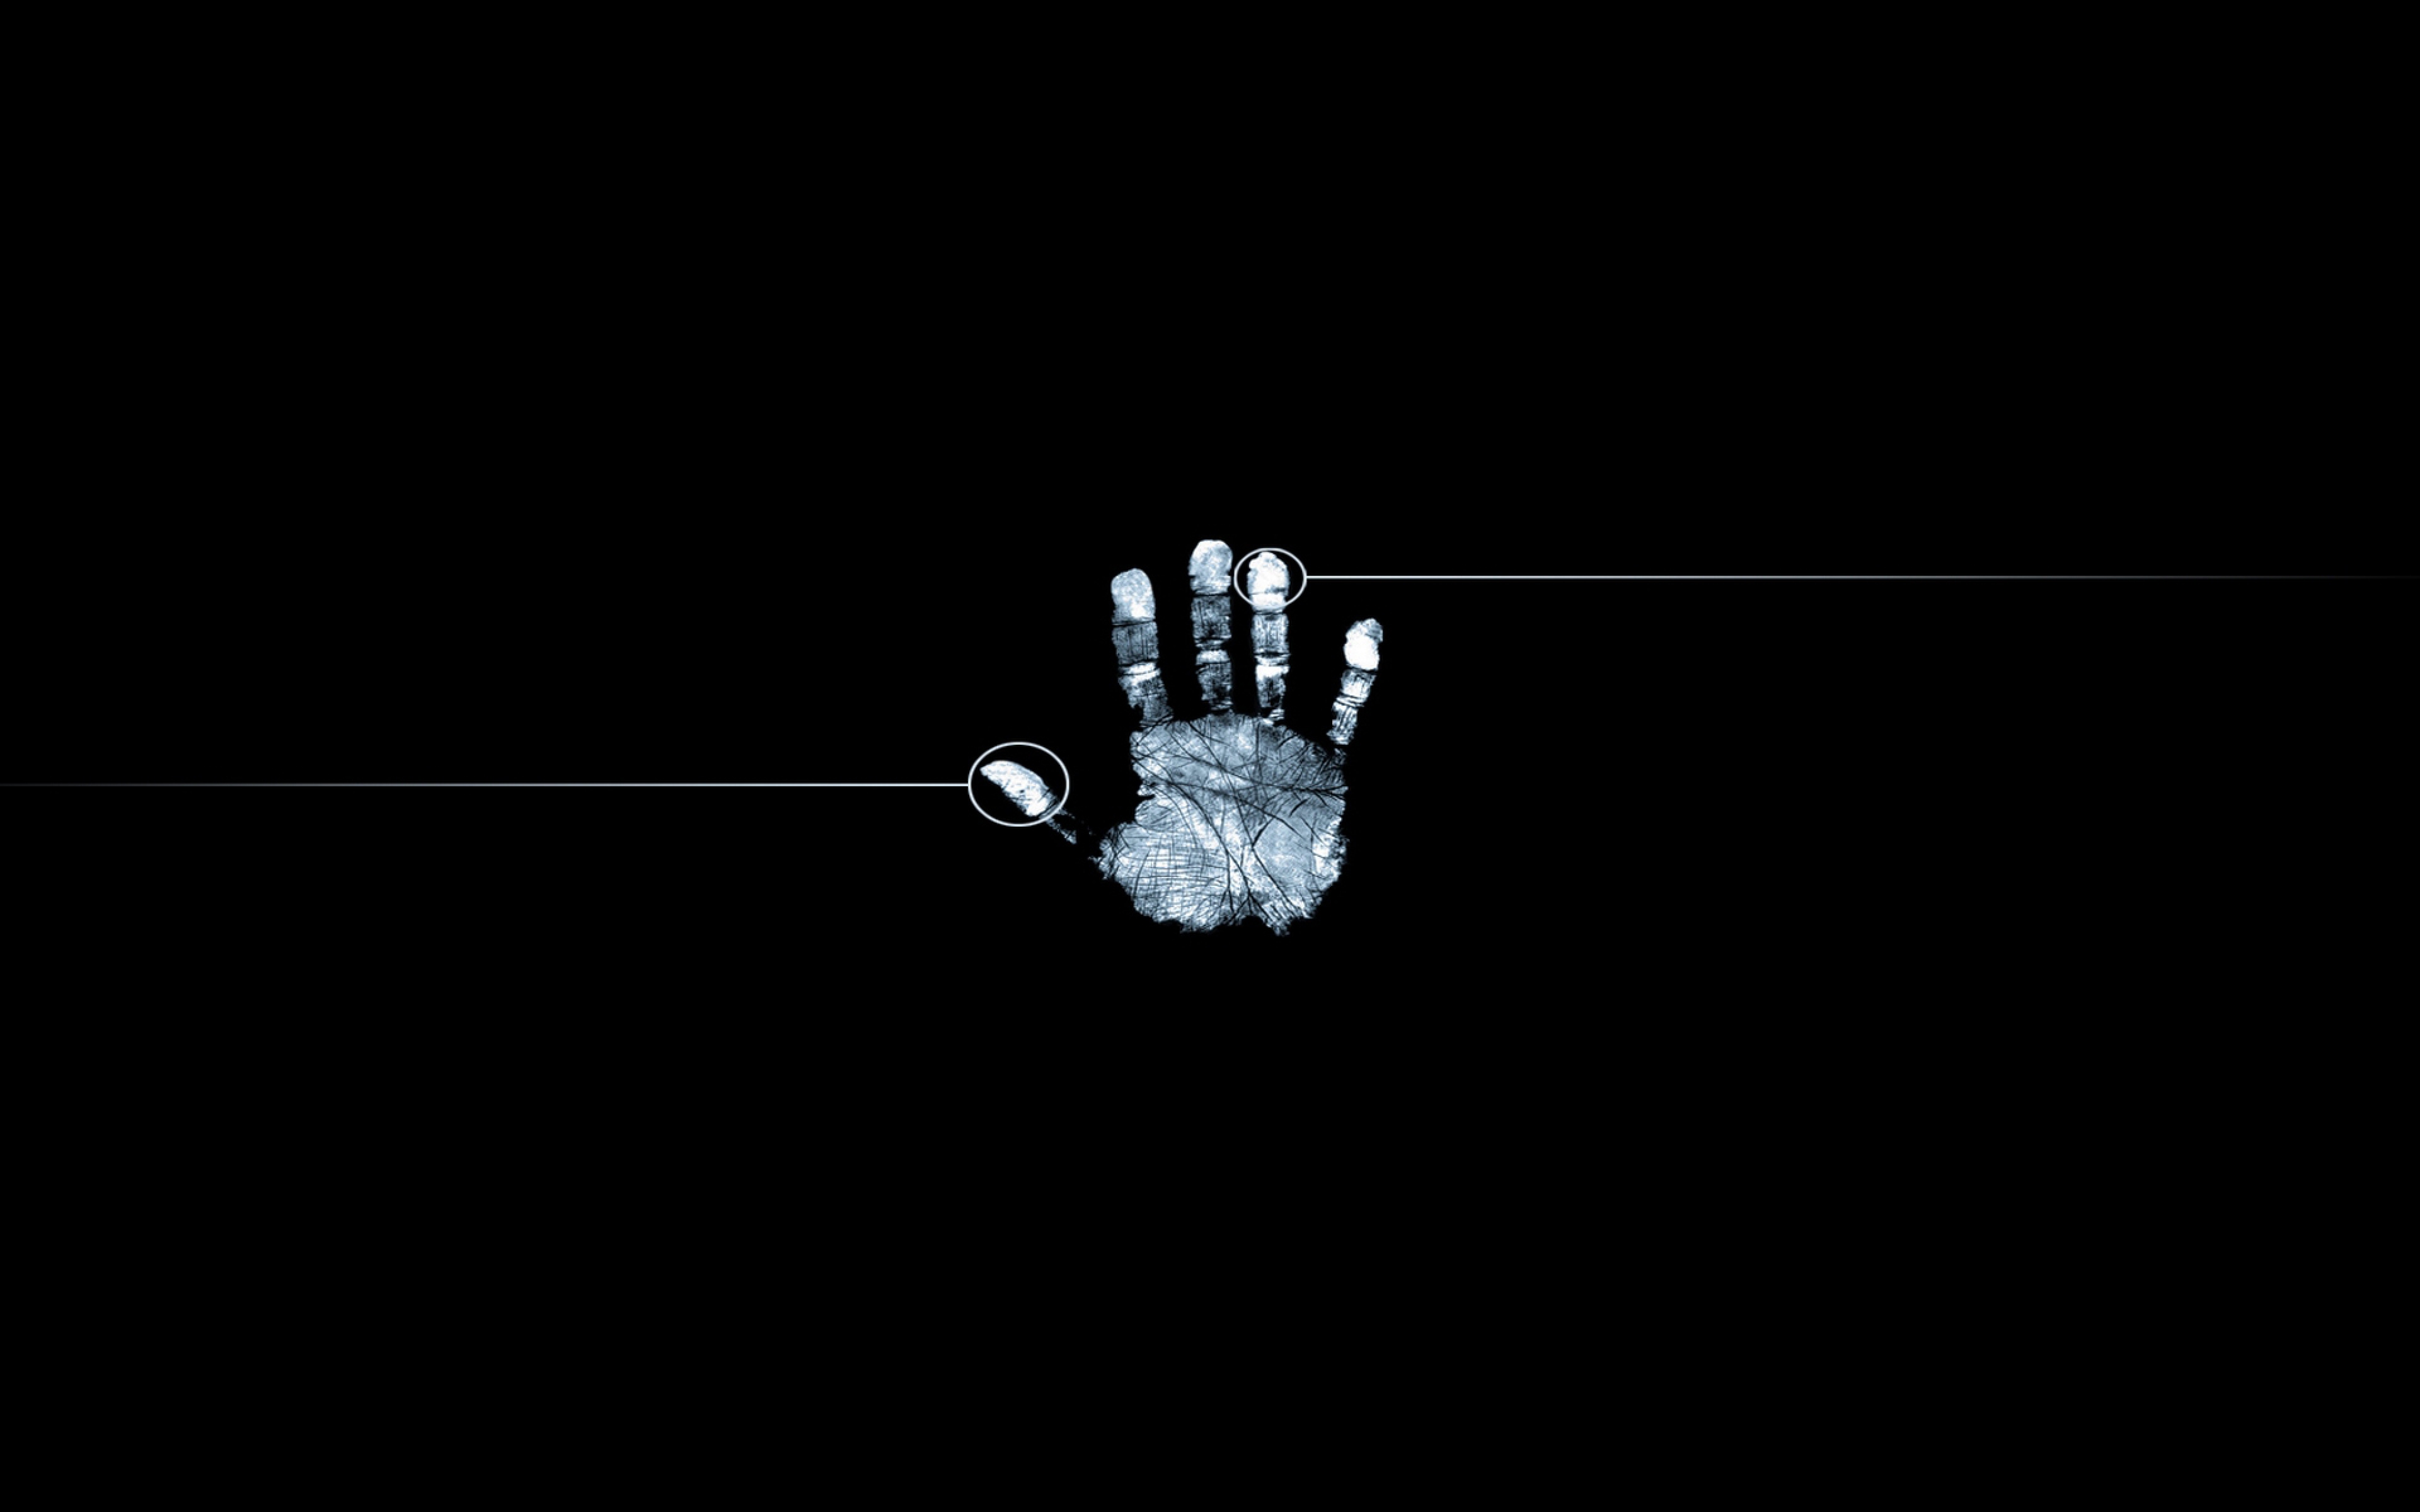  Fingerprint Hand Black white Wallpaper Background Ultra HD 4K 3840x2400